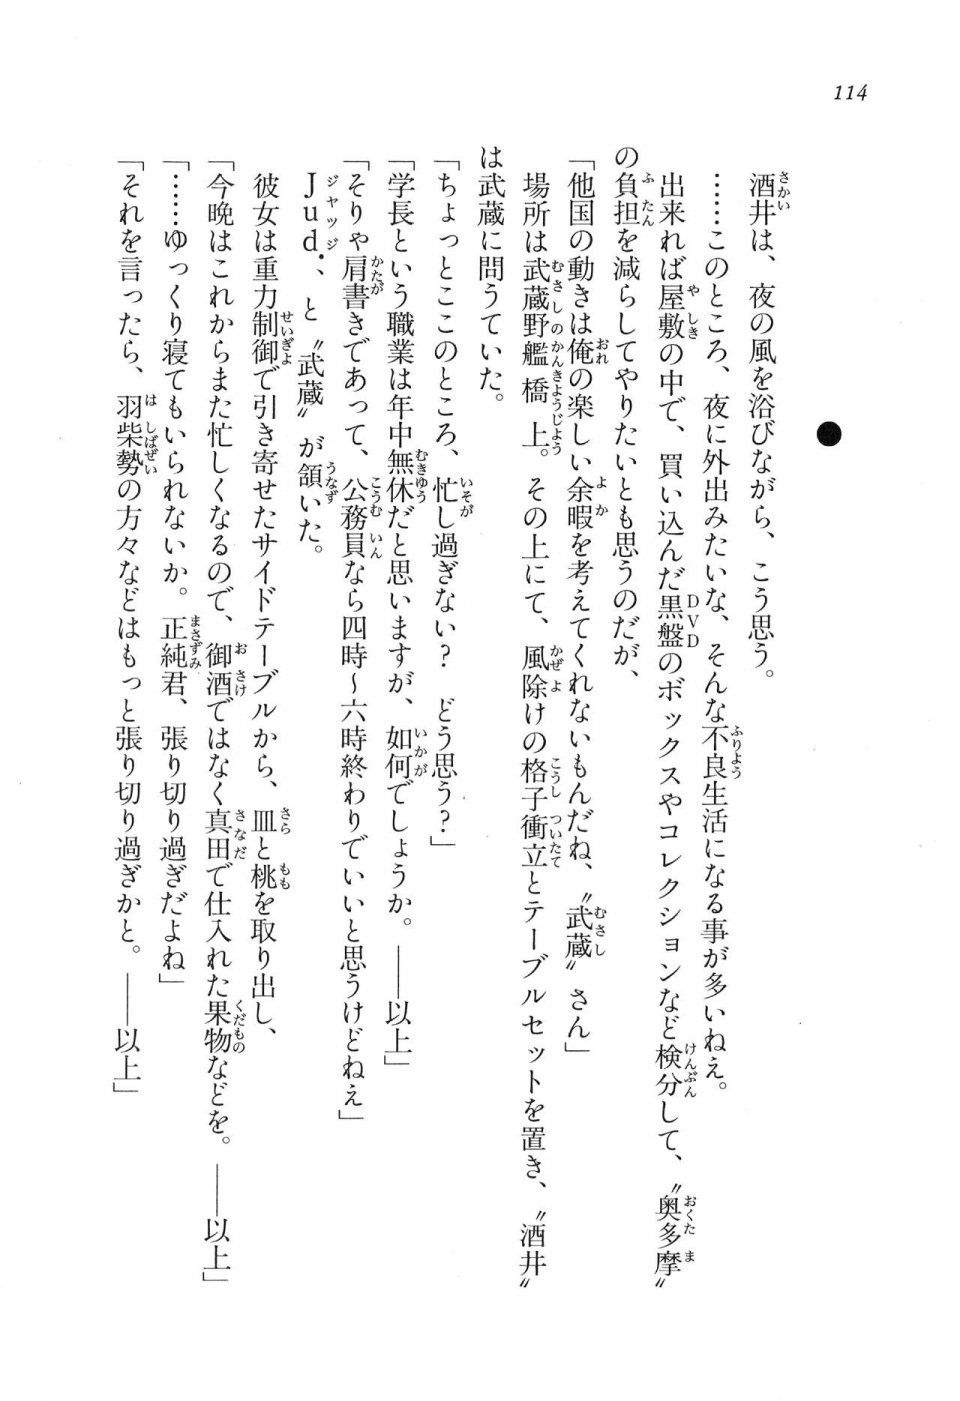 Kyoukai Senjou no Horizon LN Vol 16(7A) - Photo #114